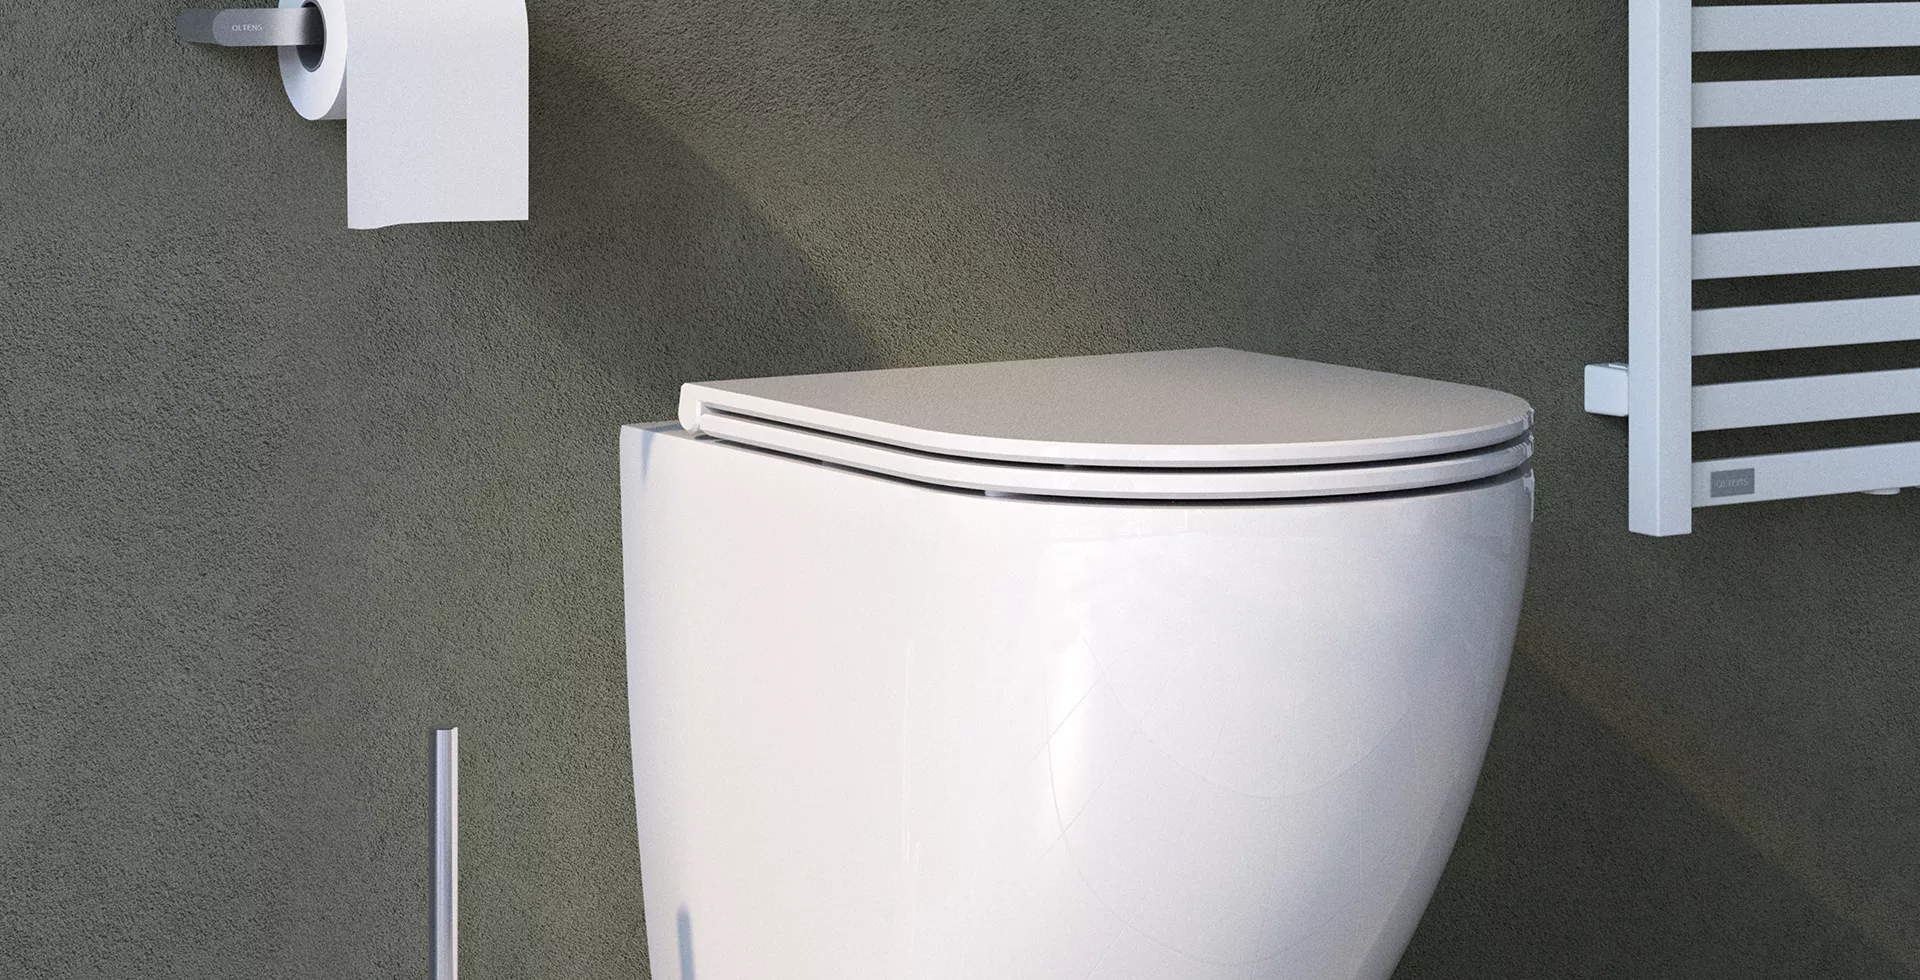 Nowoczesna miska WC — jakie musi mieć właściwości?